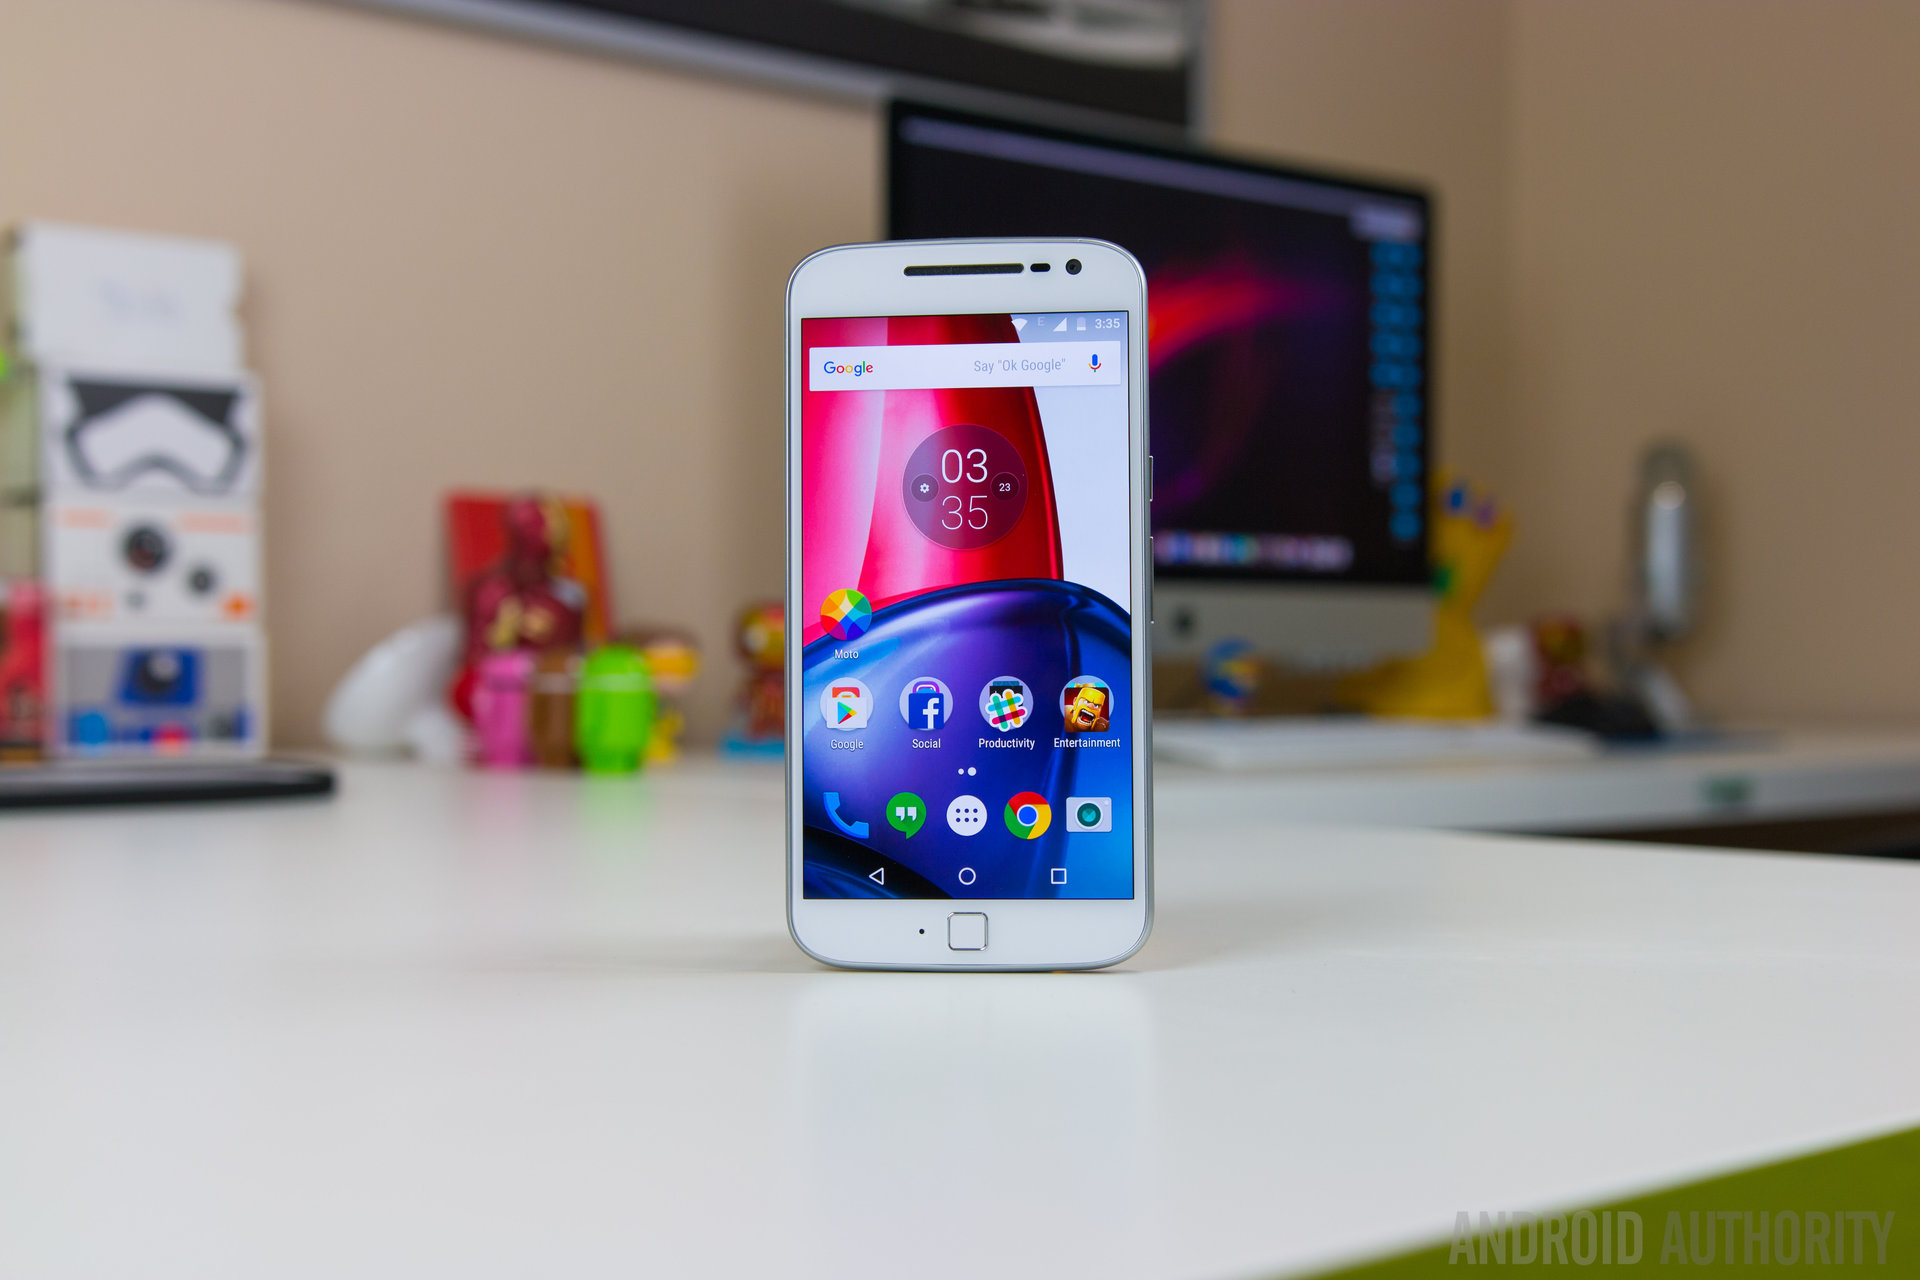 Motorola Moto G4 Plus Specs, Features (Phone Scoop)